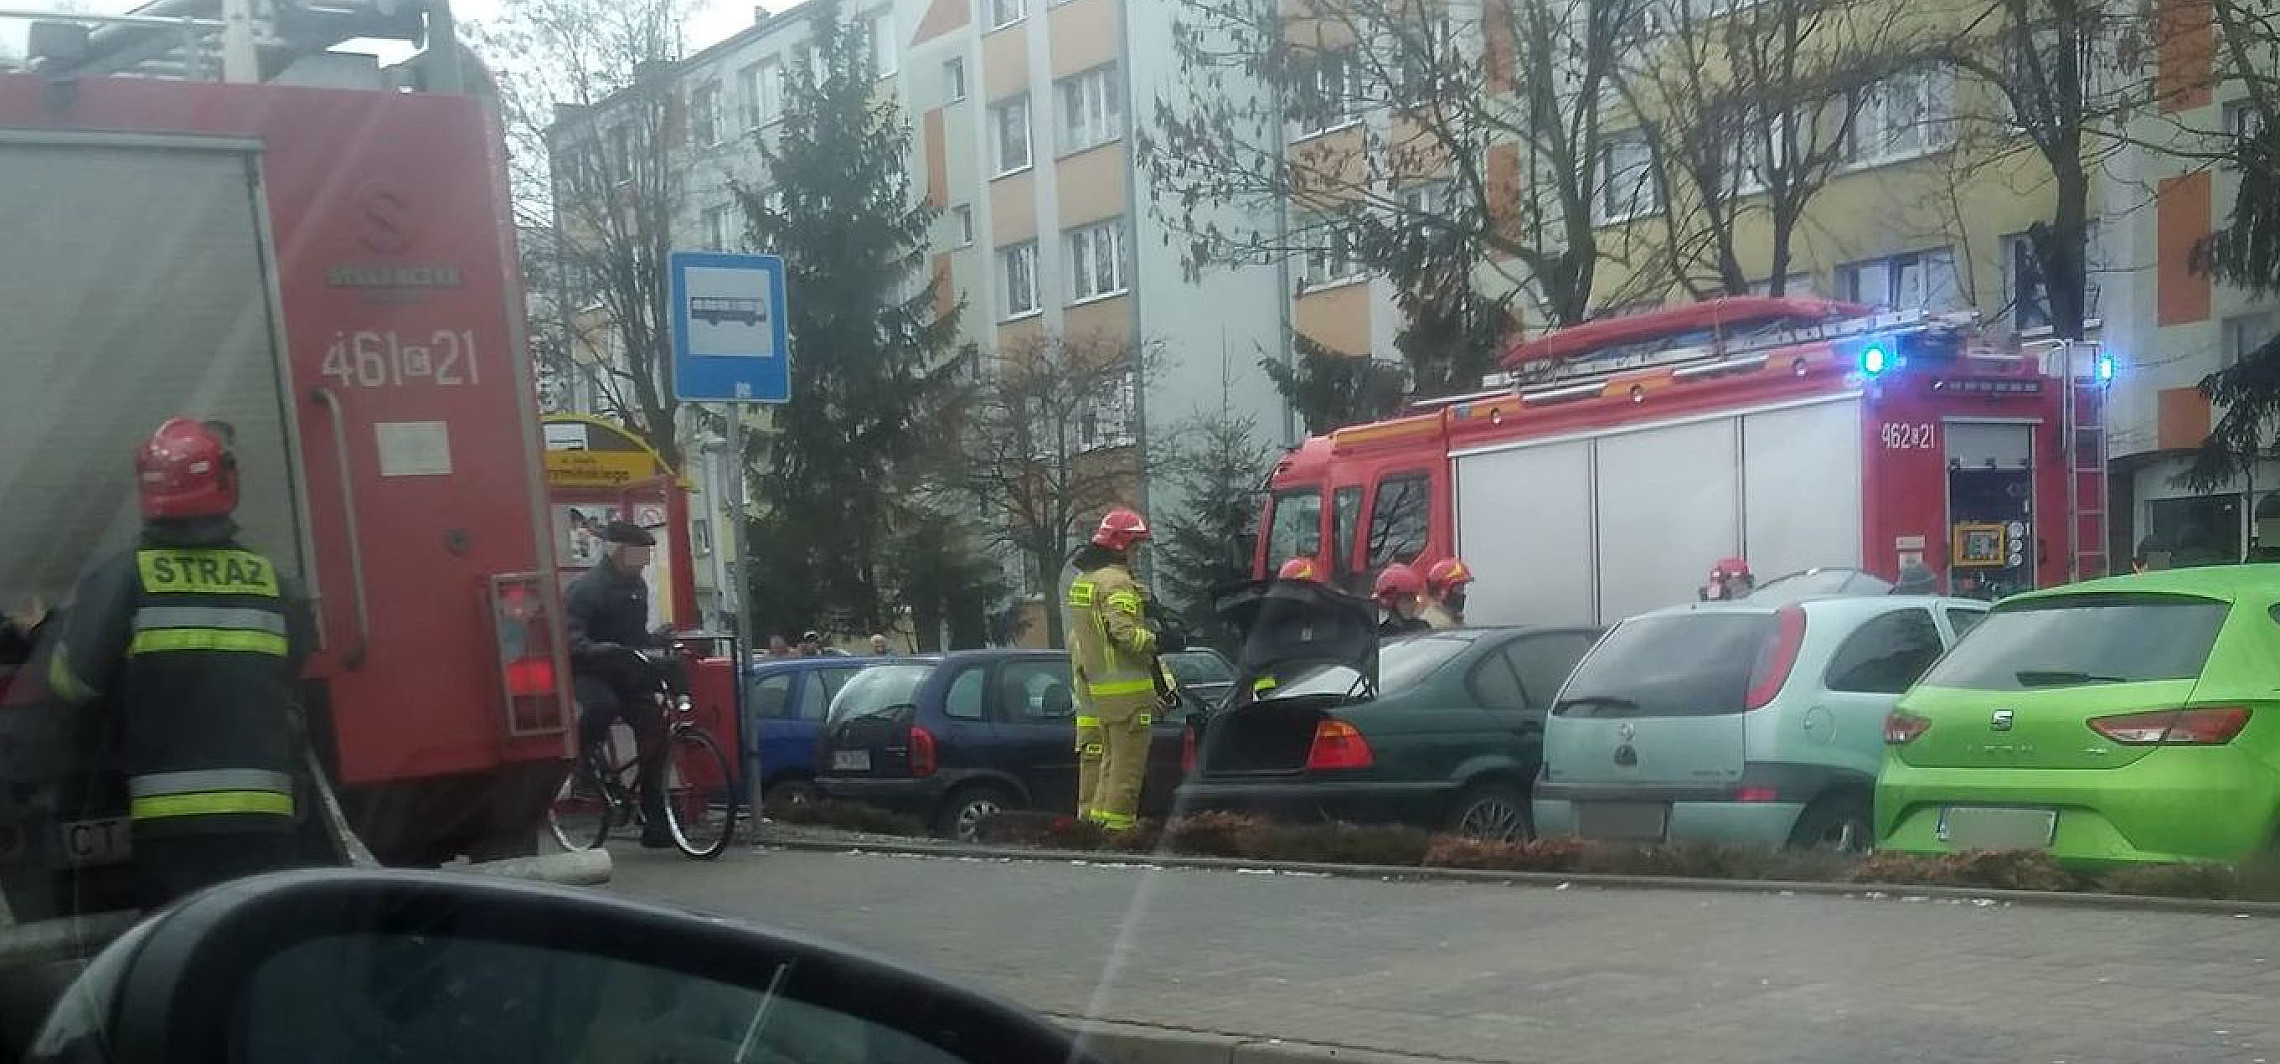 Inowrocław - Pożar samochodu na Rąbinie